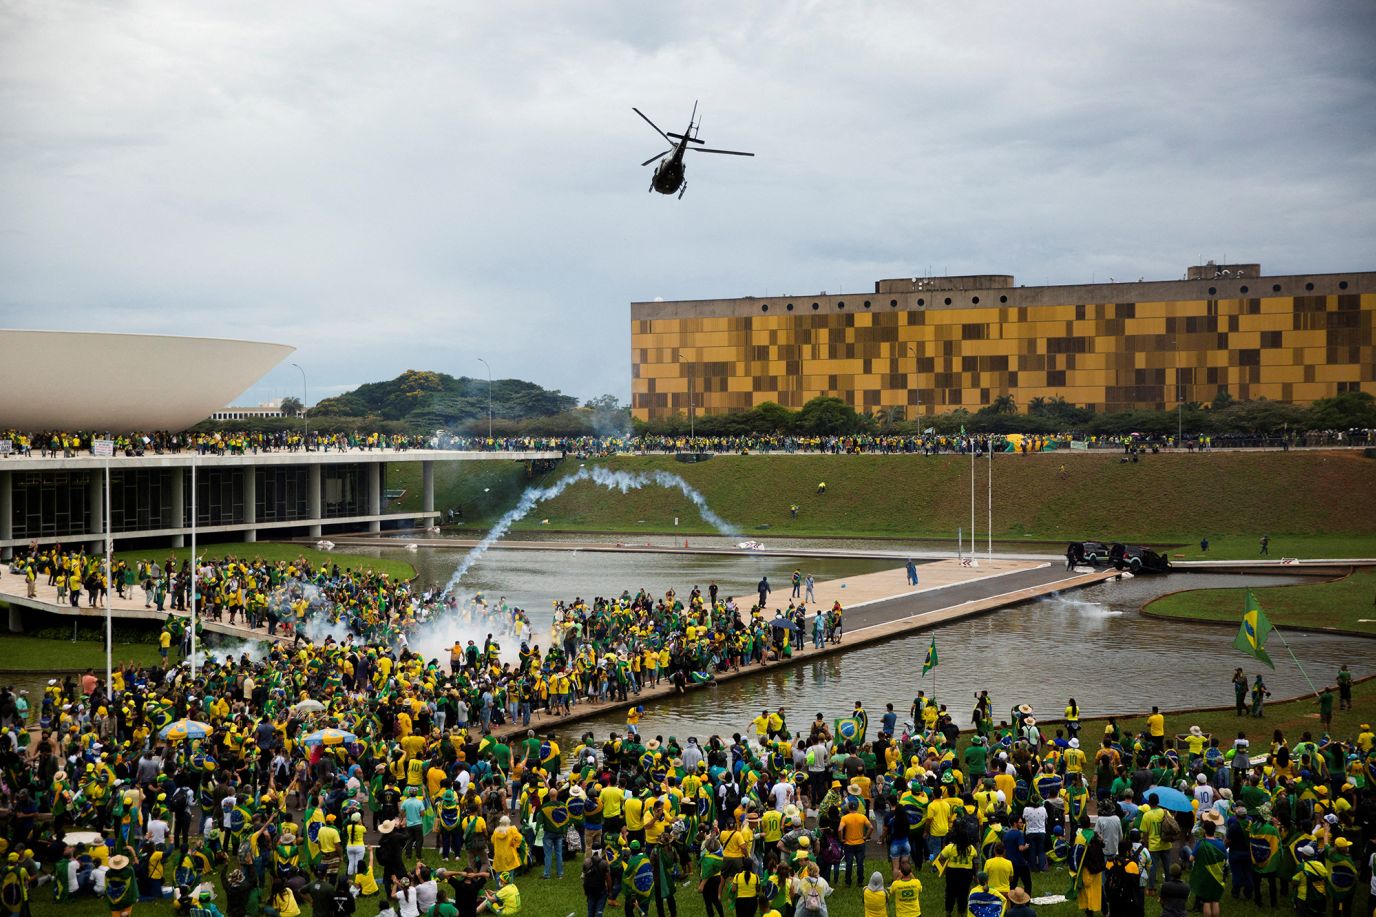 Βραζιλία: «Μια προαναγγελθείσα επίθεση» - Πώς η ρητορική και μετά η σιωπή του Μπολσονάρο ενορχήστρωσαν την εισβολή